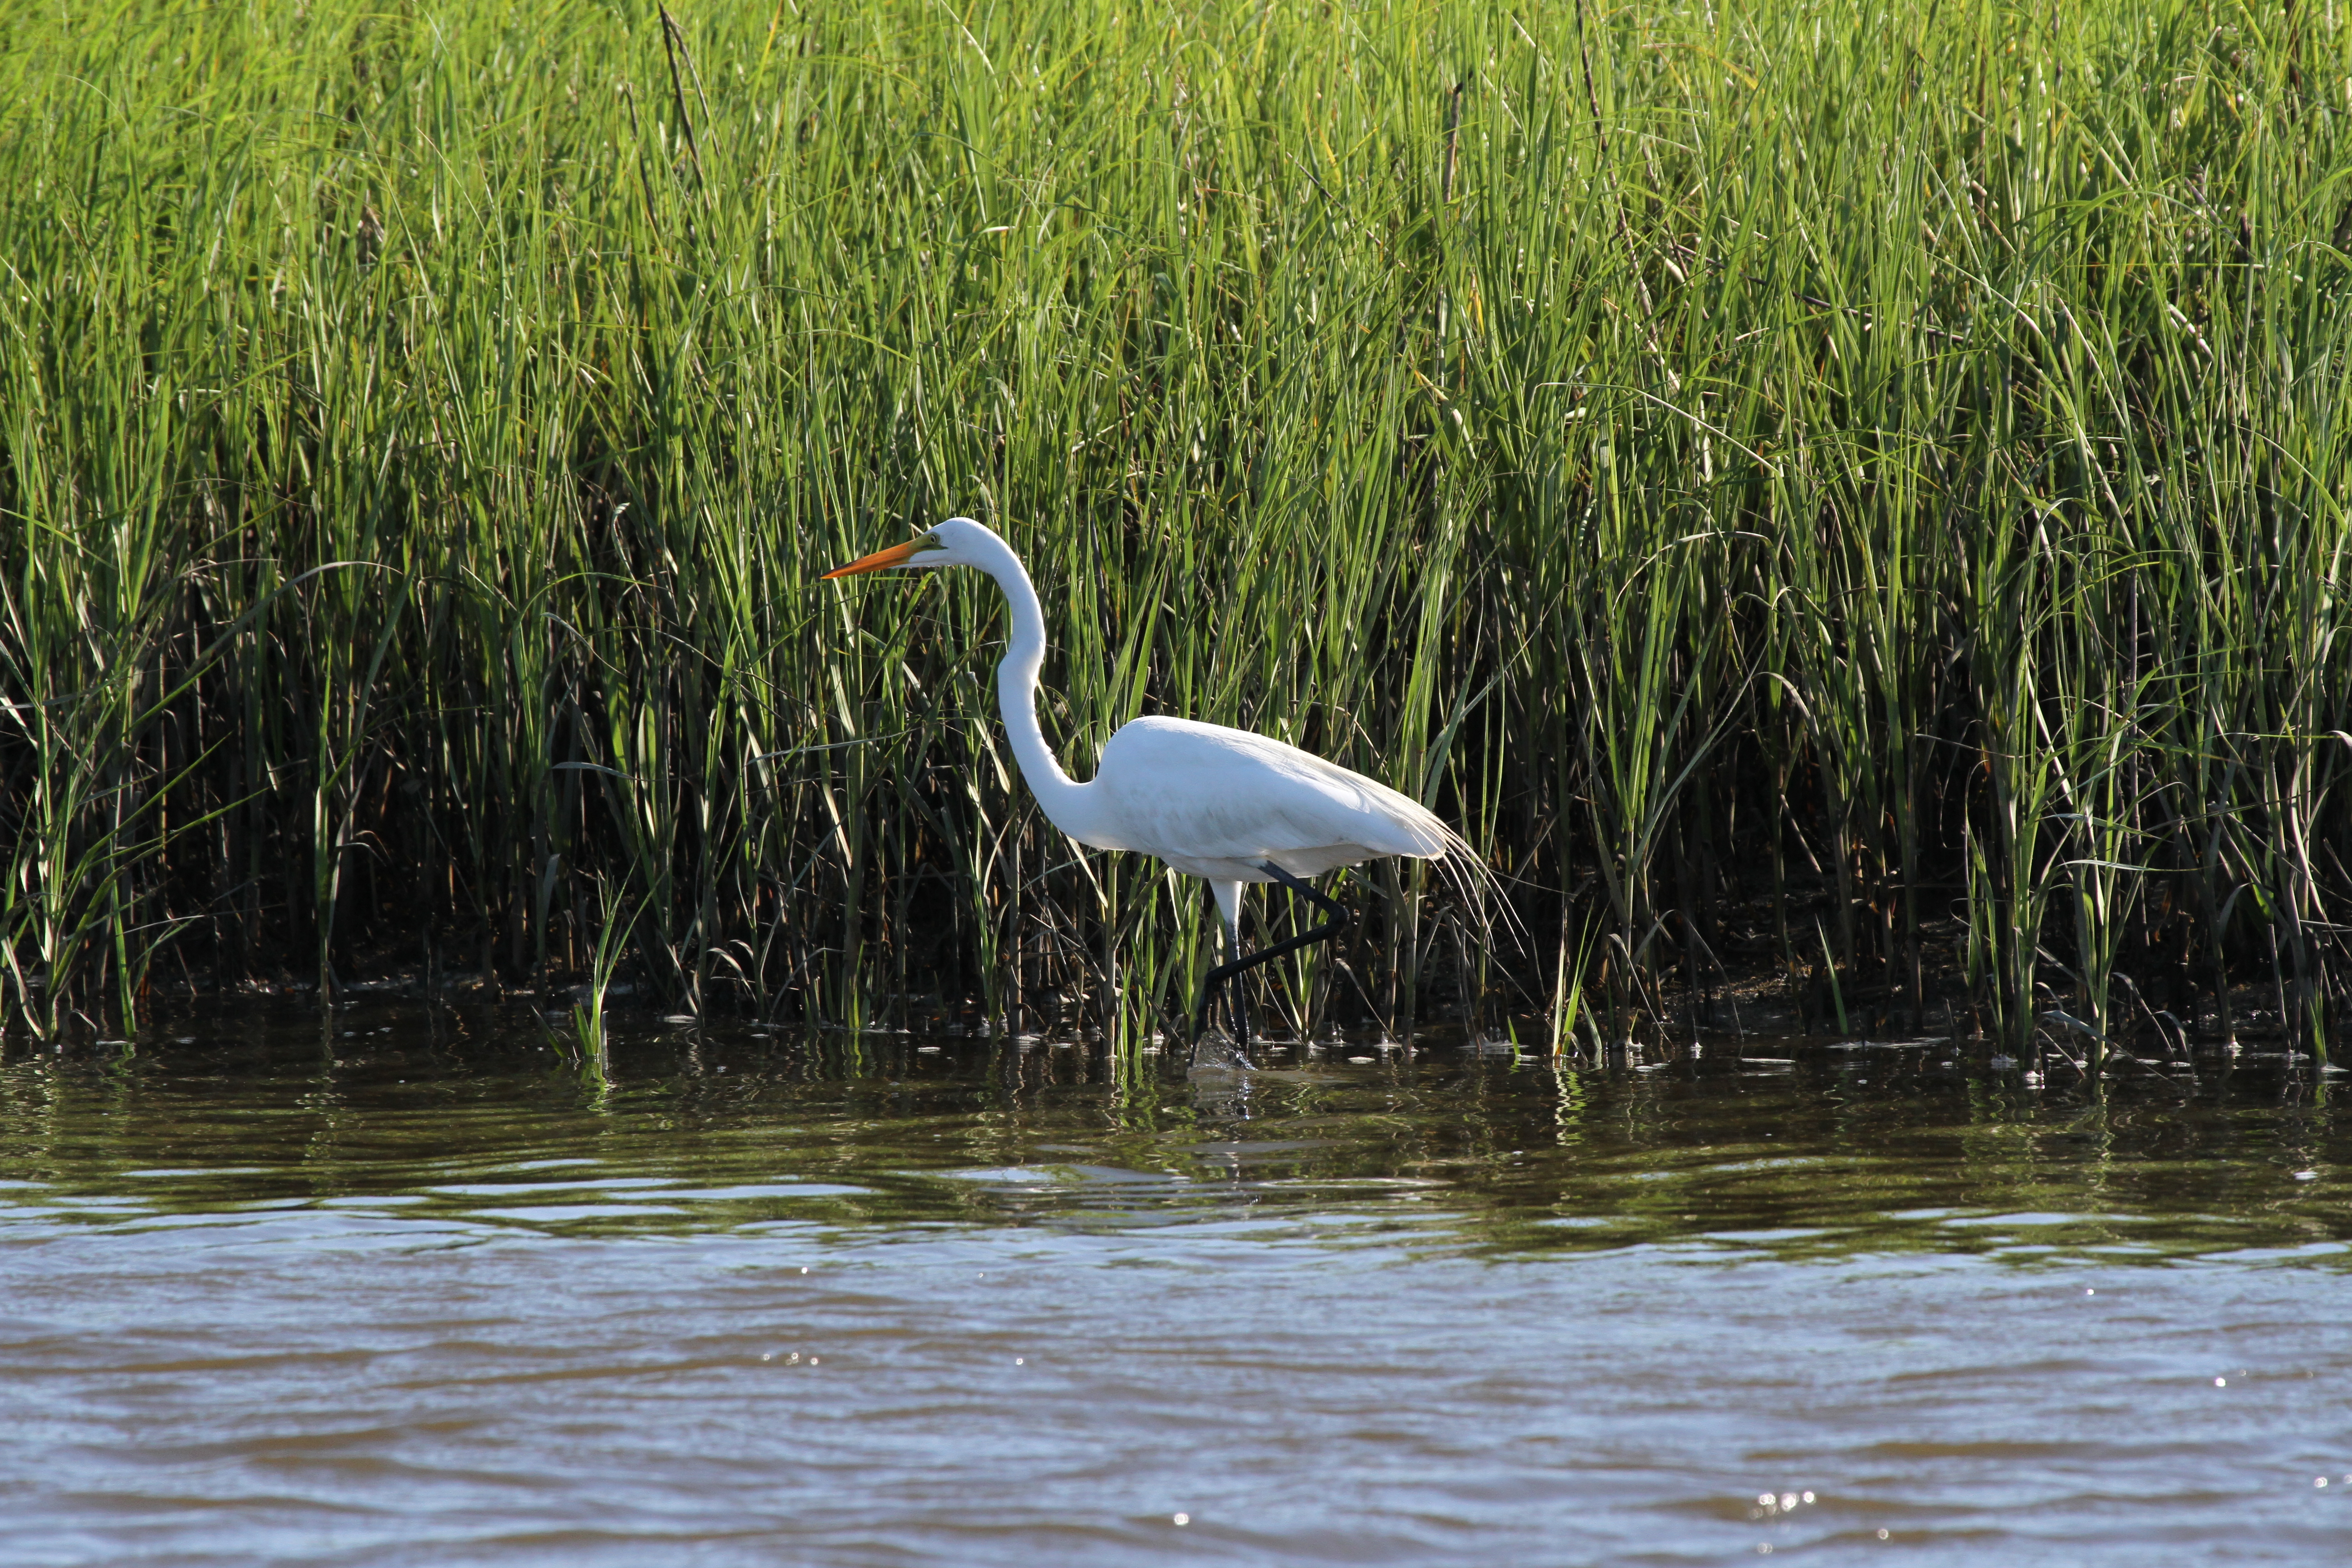 White bird in front of green salt marsh grass. 